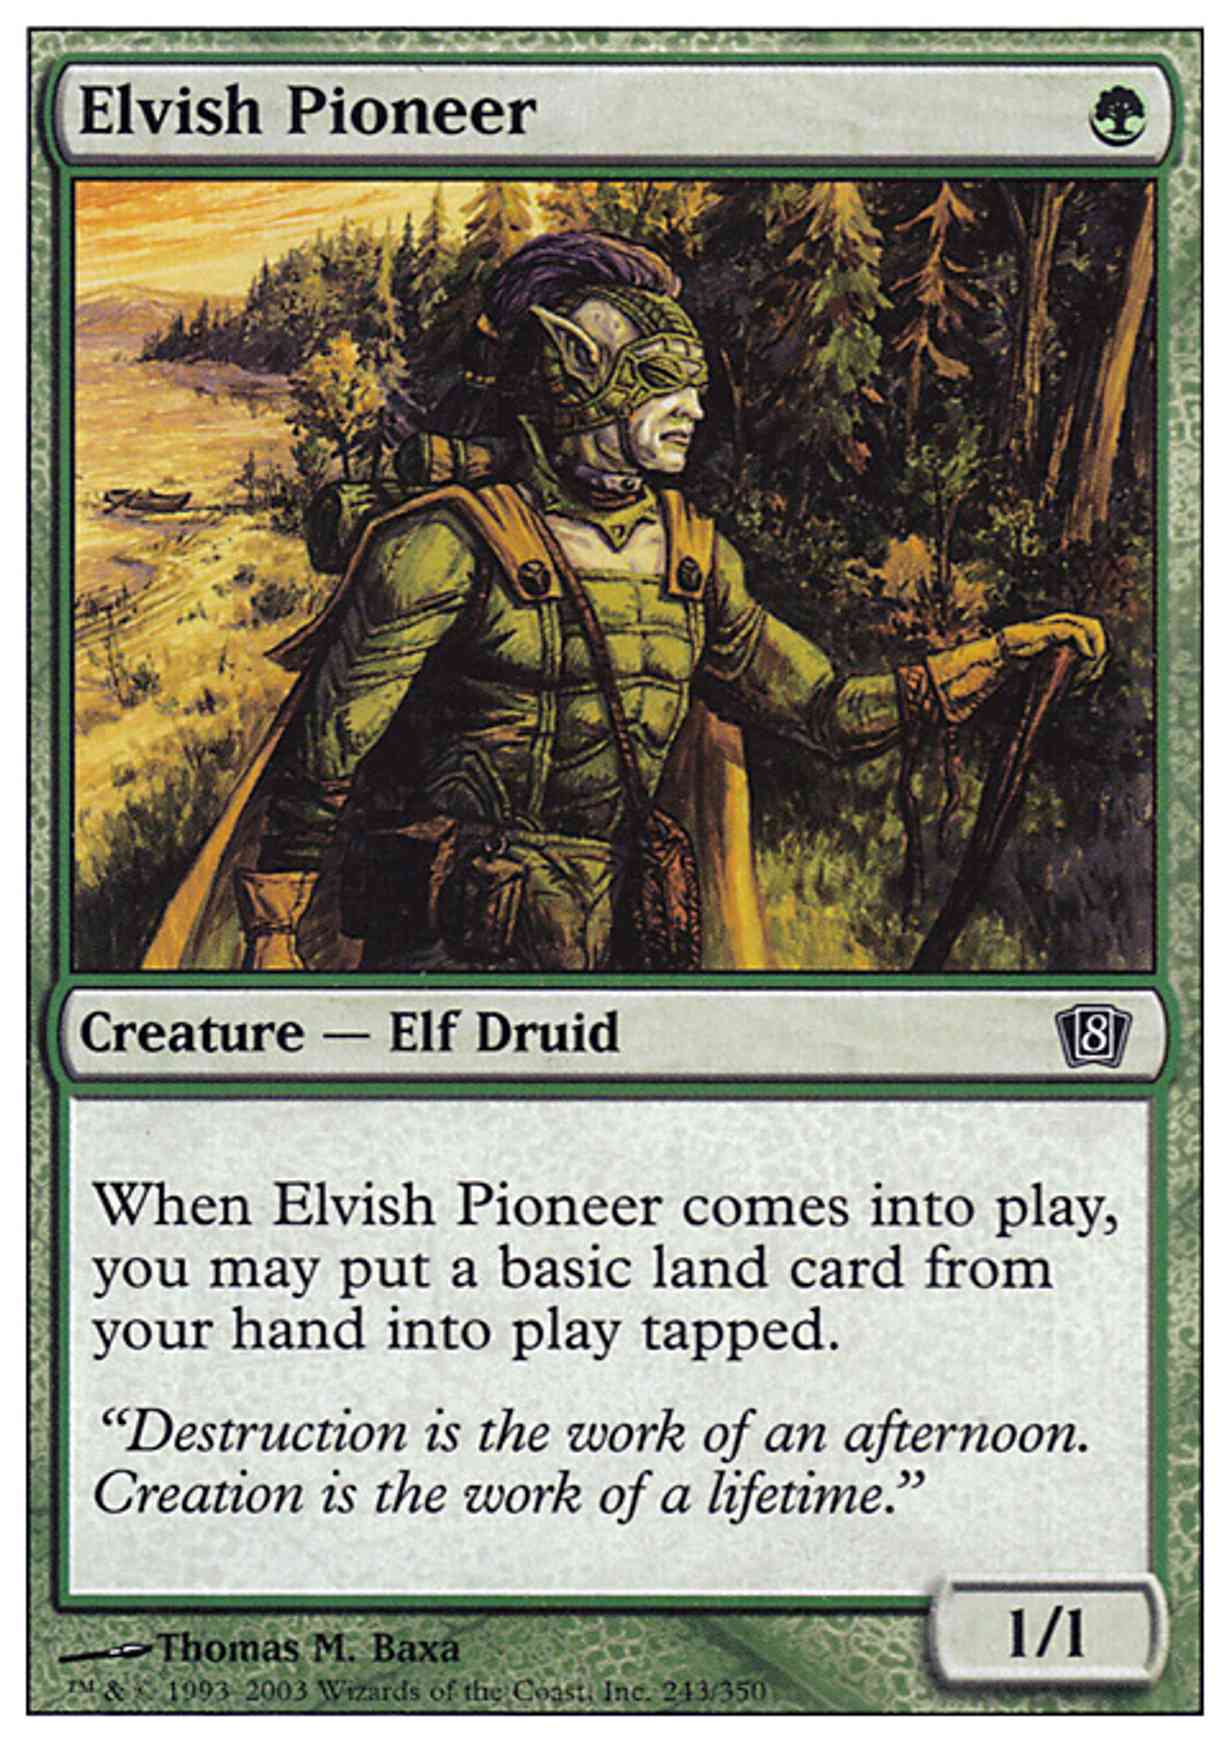 Elvish Pioneer magic card front